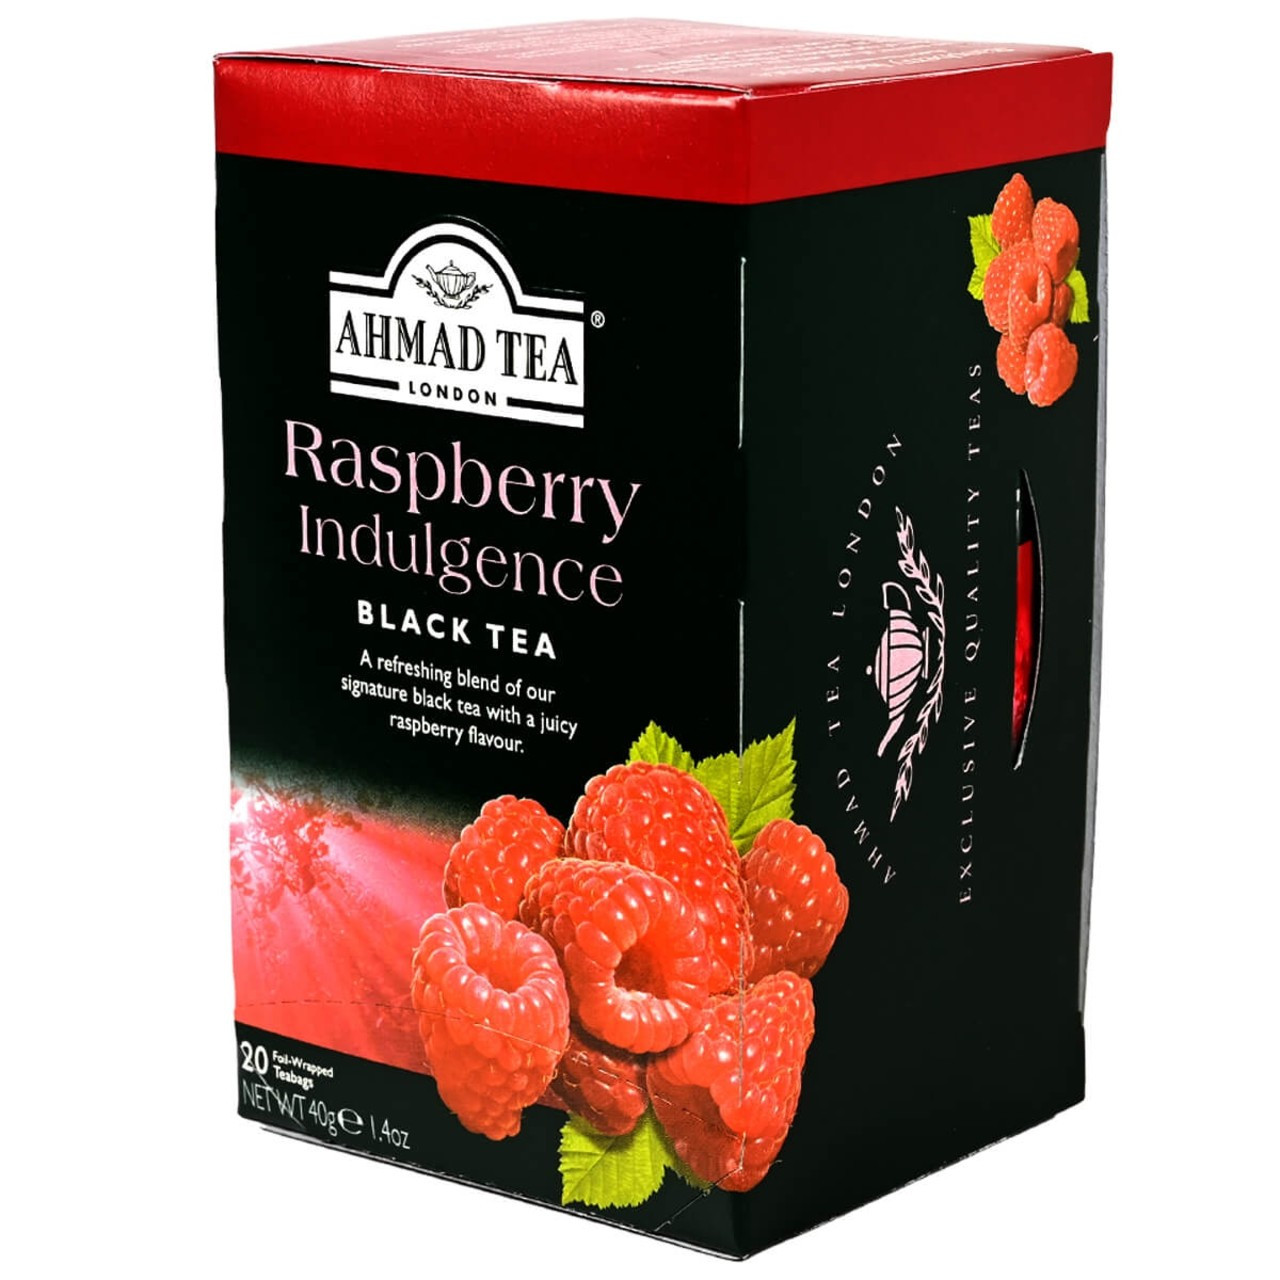 Ahmad Tea's Raspberry Indulgence Flavored Black Tea Bags - 20 count